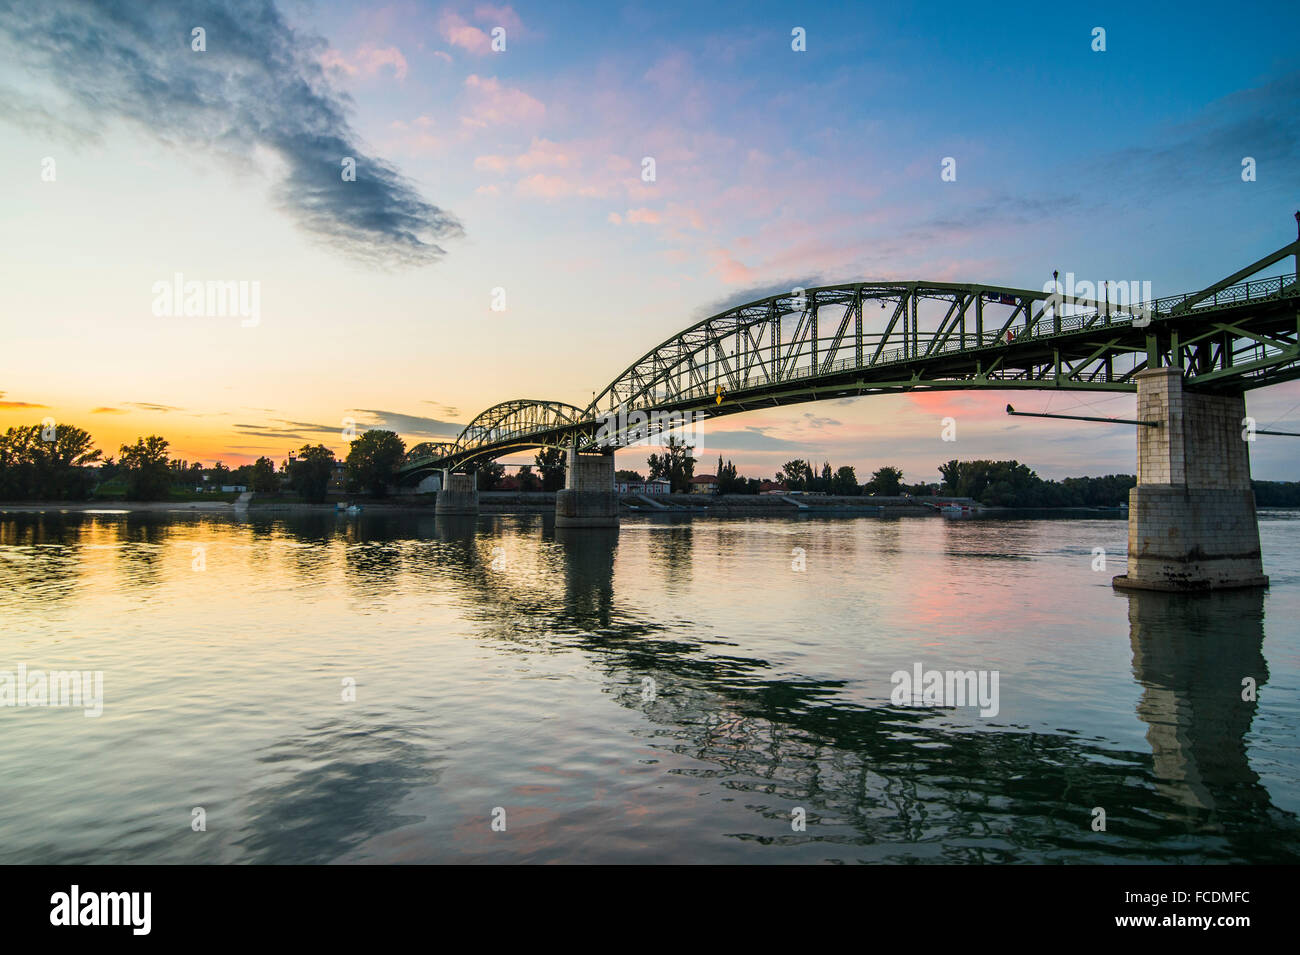 Mária Valéria bridge, bridge across the Danube, linking Esztergom, Hungary and Štúrovo, Slovakia Stock Photo